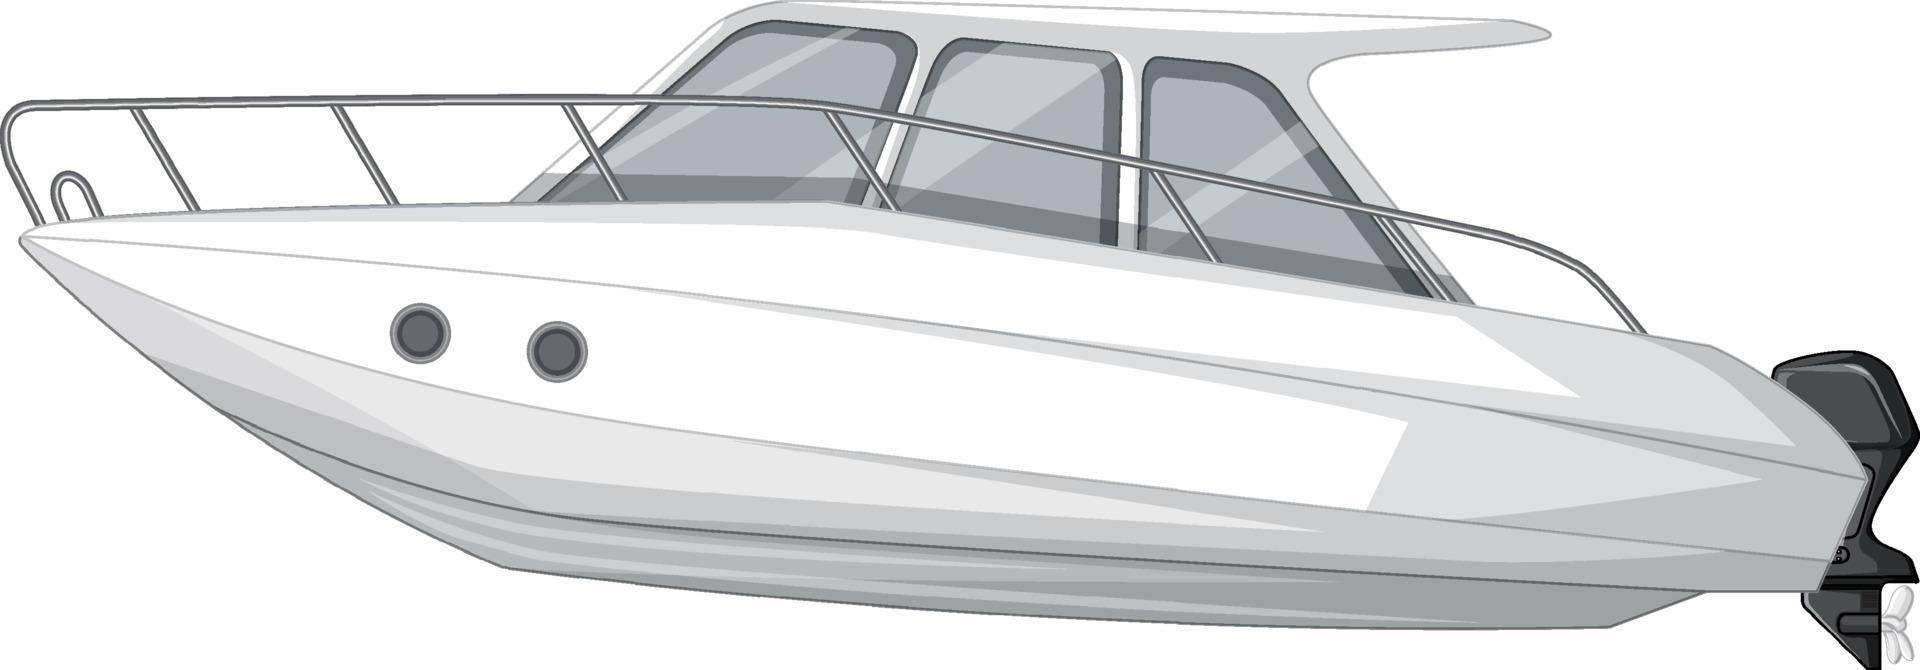 speedboot of motorboot geïsoleerd op witte achtergrond vector